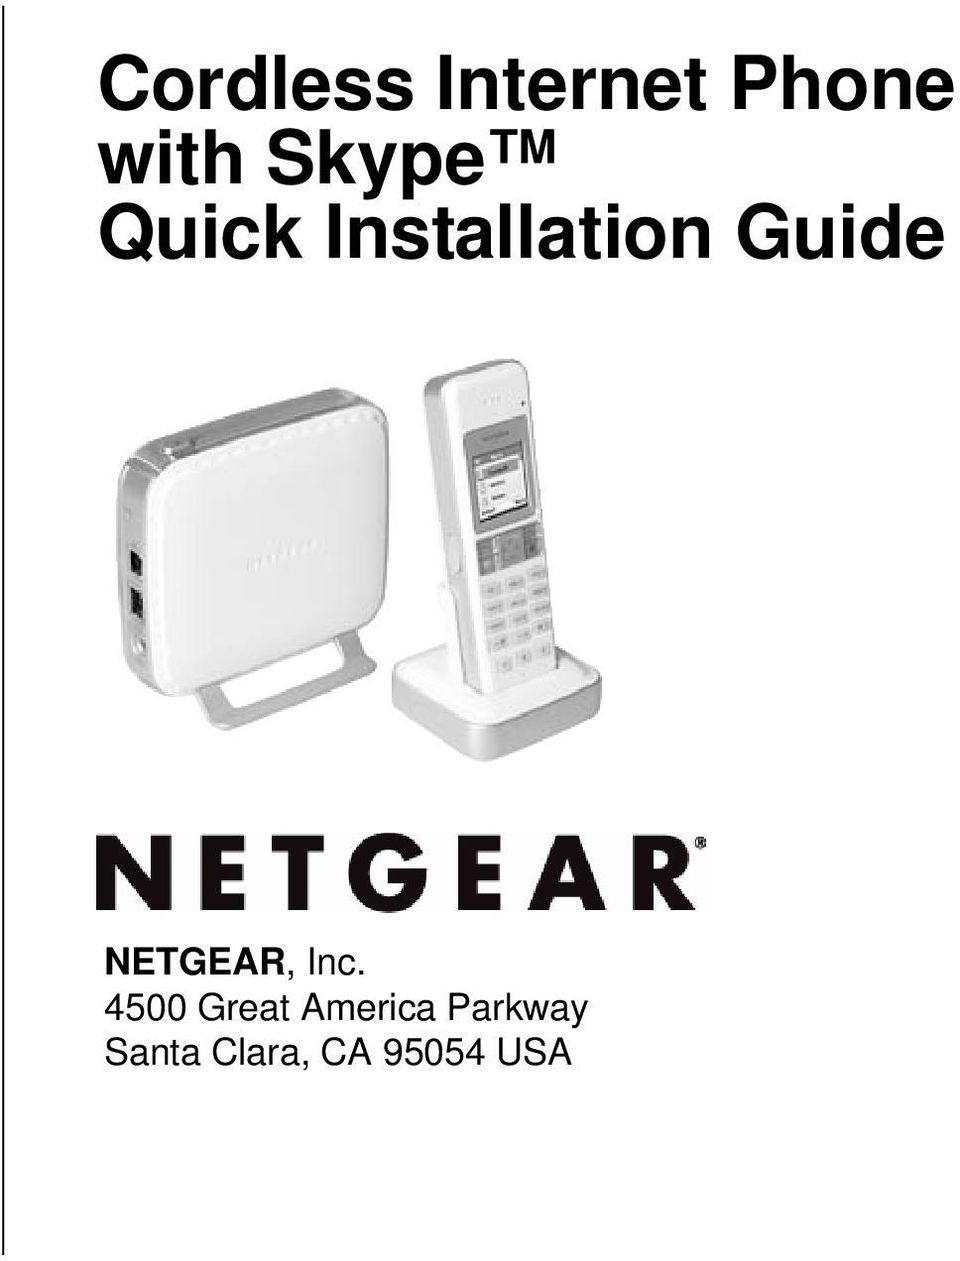 NETGEAR, Inc.